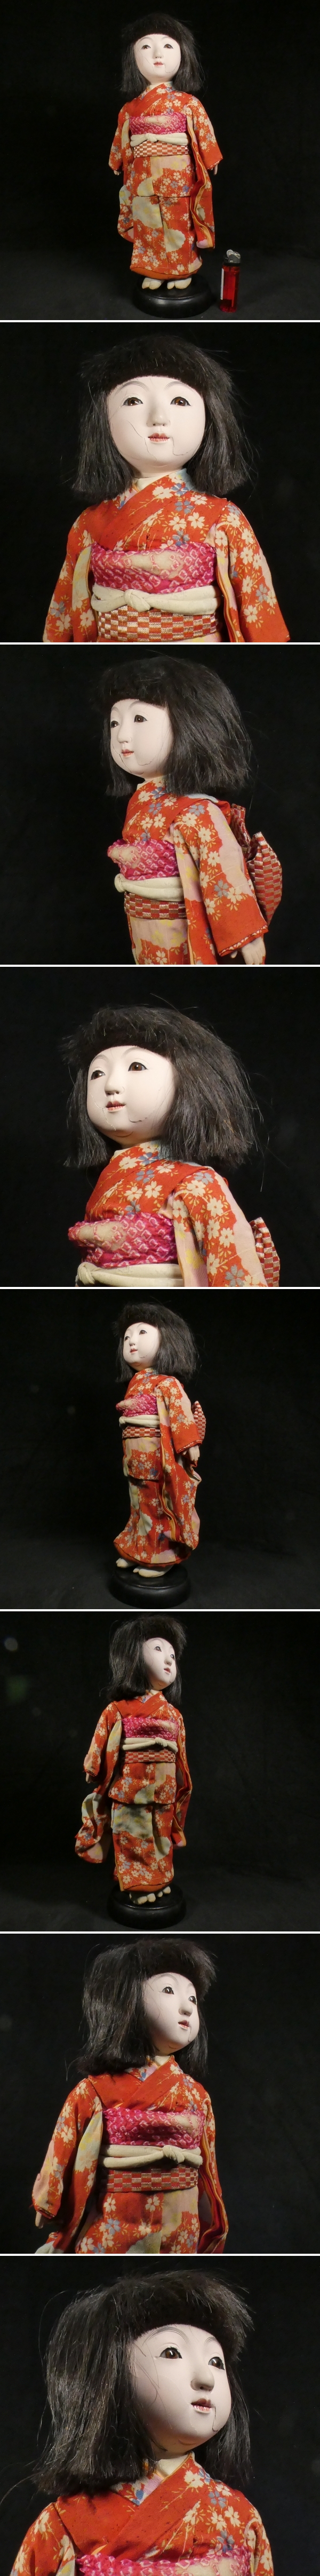 【 恵 #0054 】 市松人形 身長約37cm 可愛らしい女の子 日本人形